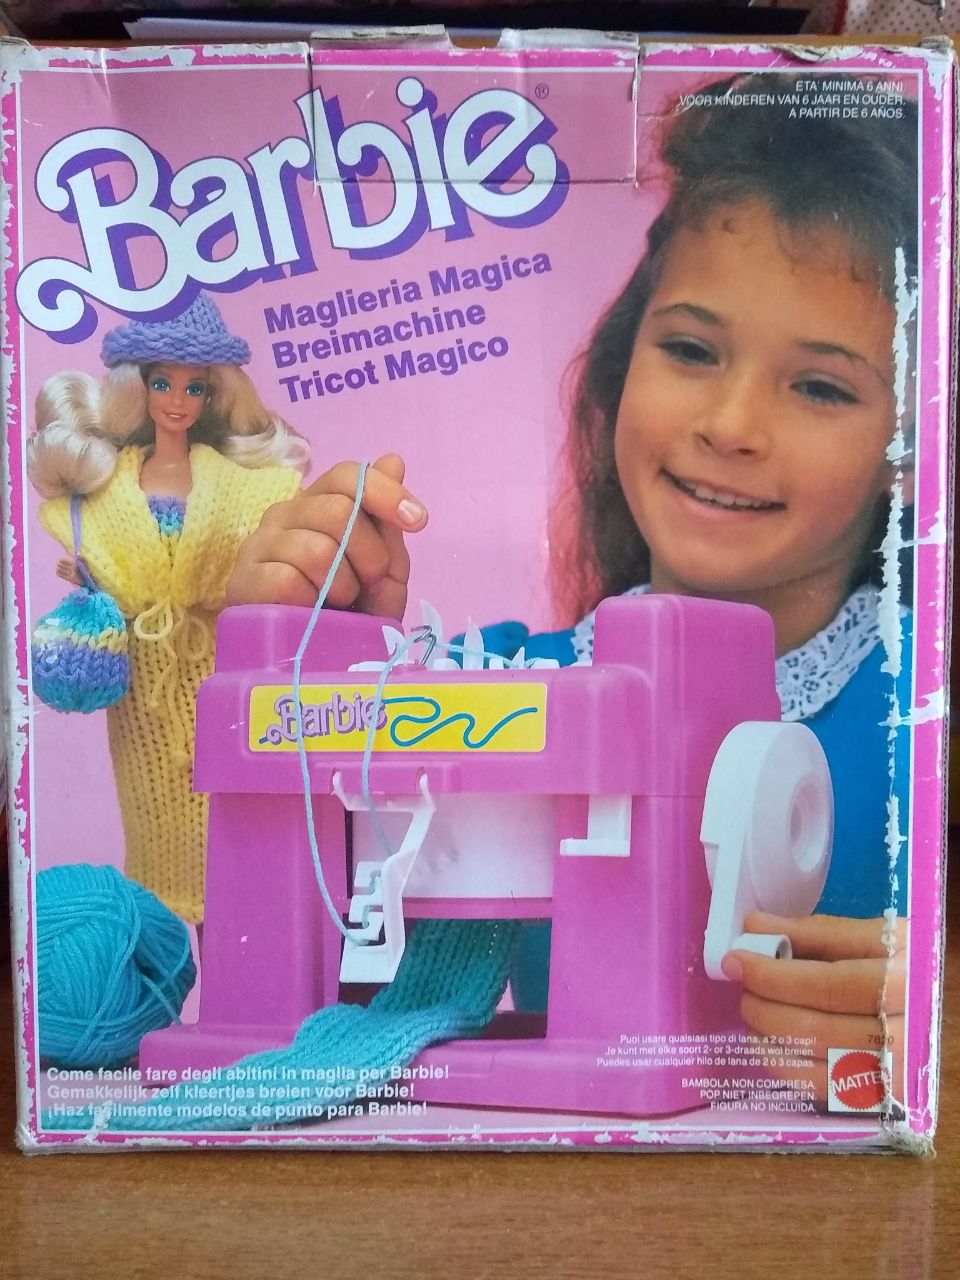 Barbie Mattel Maglieria Magica anni 80-90 Msg15110